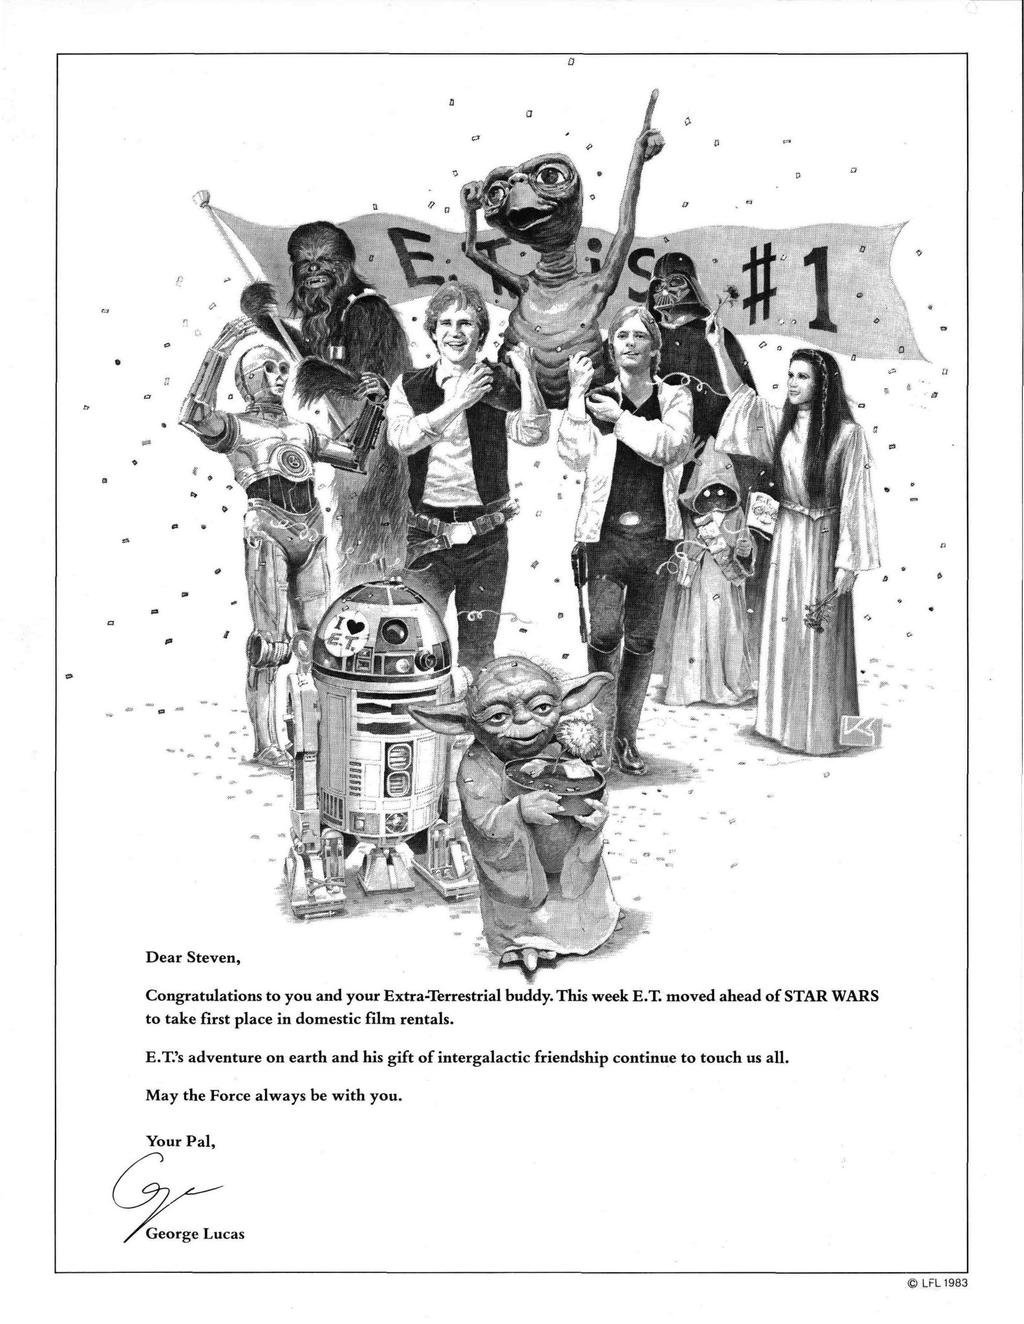 A Star Wars szereplői vállukra emelik E.T.-t. Lucas a Varietyben feladott hirdetésben gratulált Spielbergnek 1982-es filmje sikeréhez.